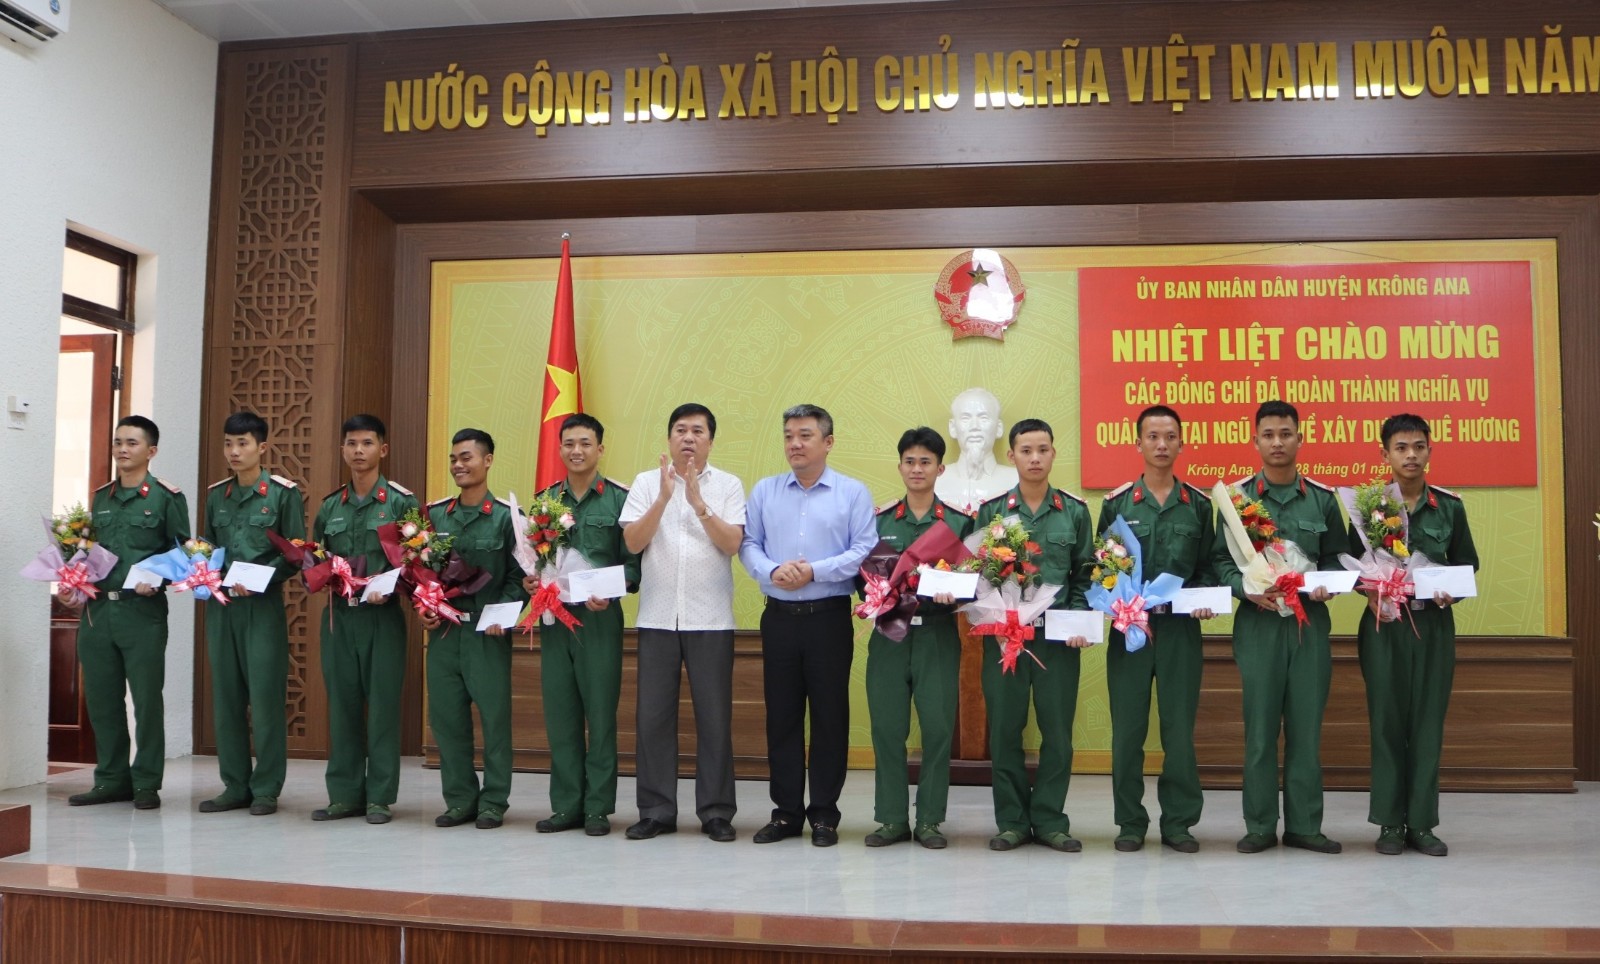 Huyện Krông Ana đón quân nhân hoàn thành nghĩa vụ quân sự trở về địa phương